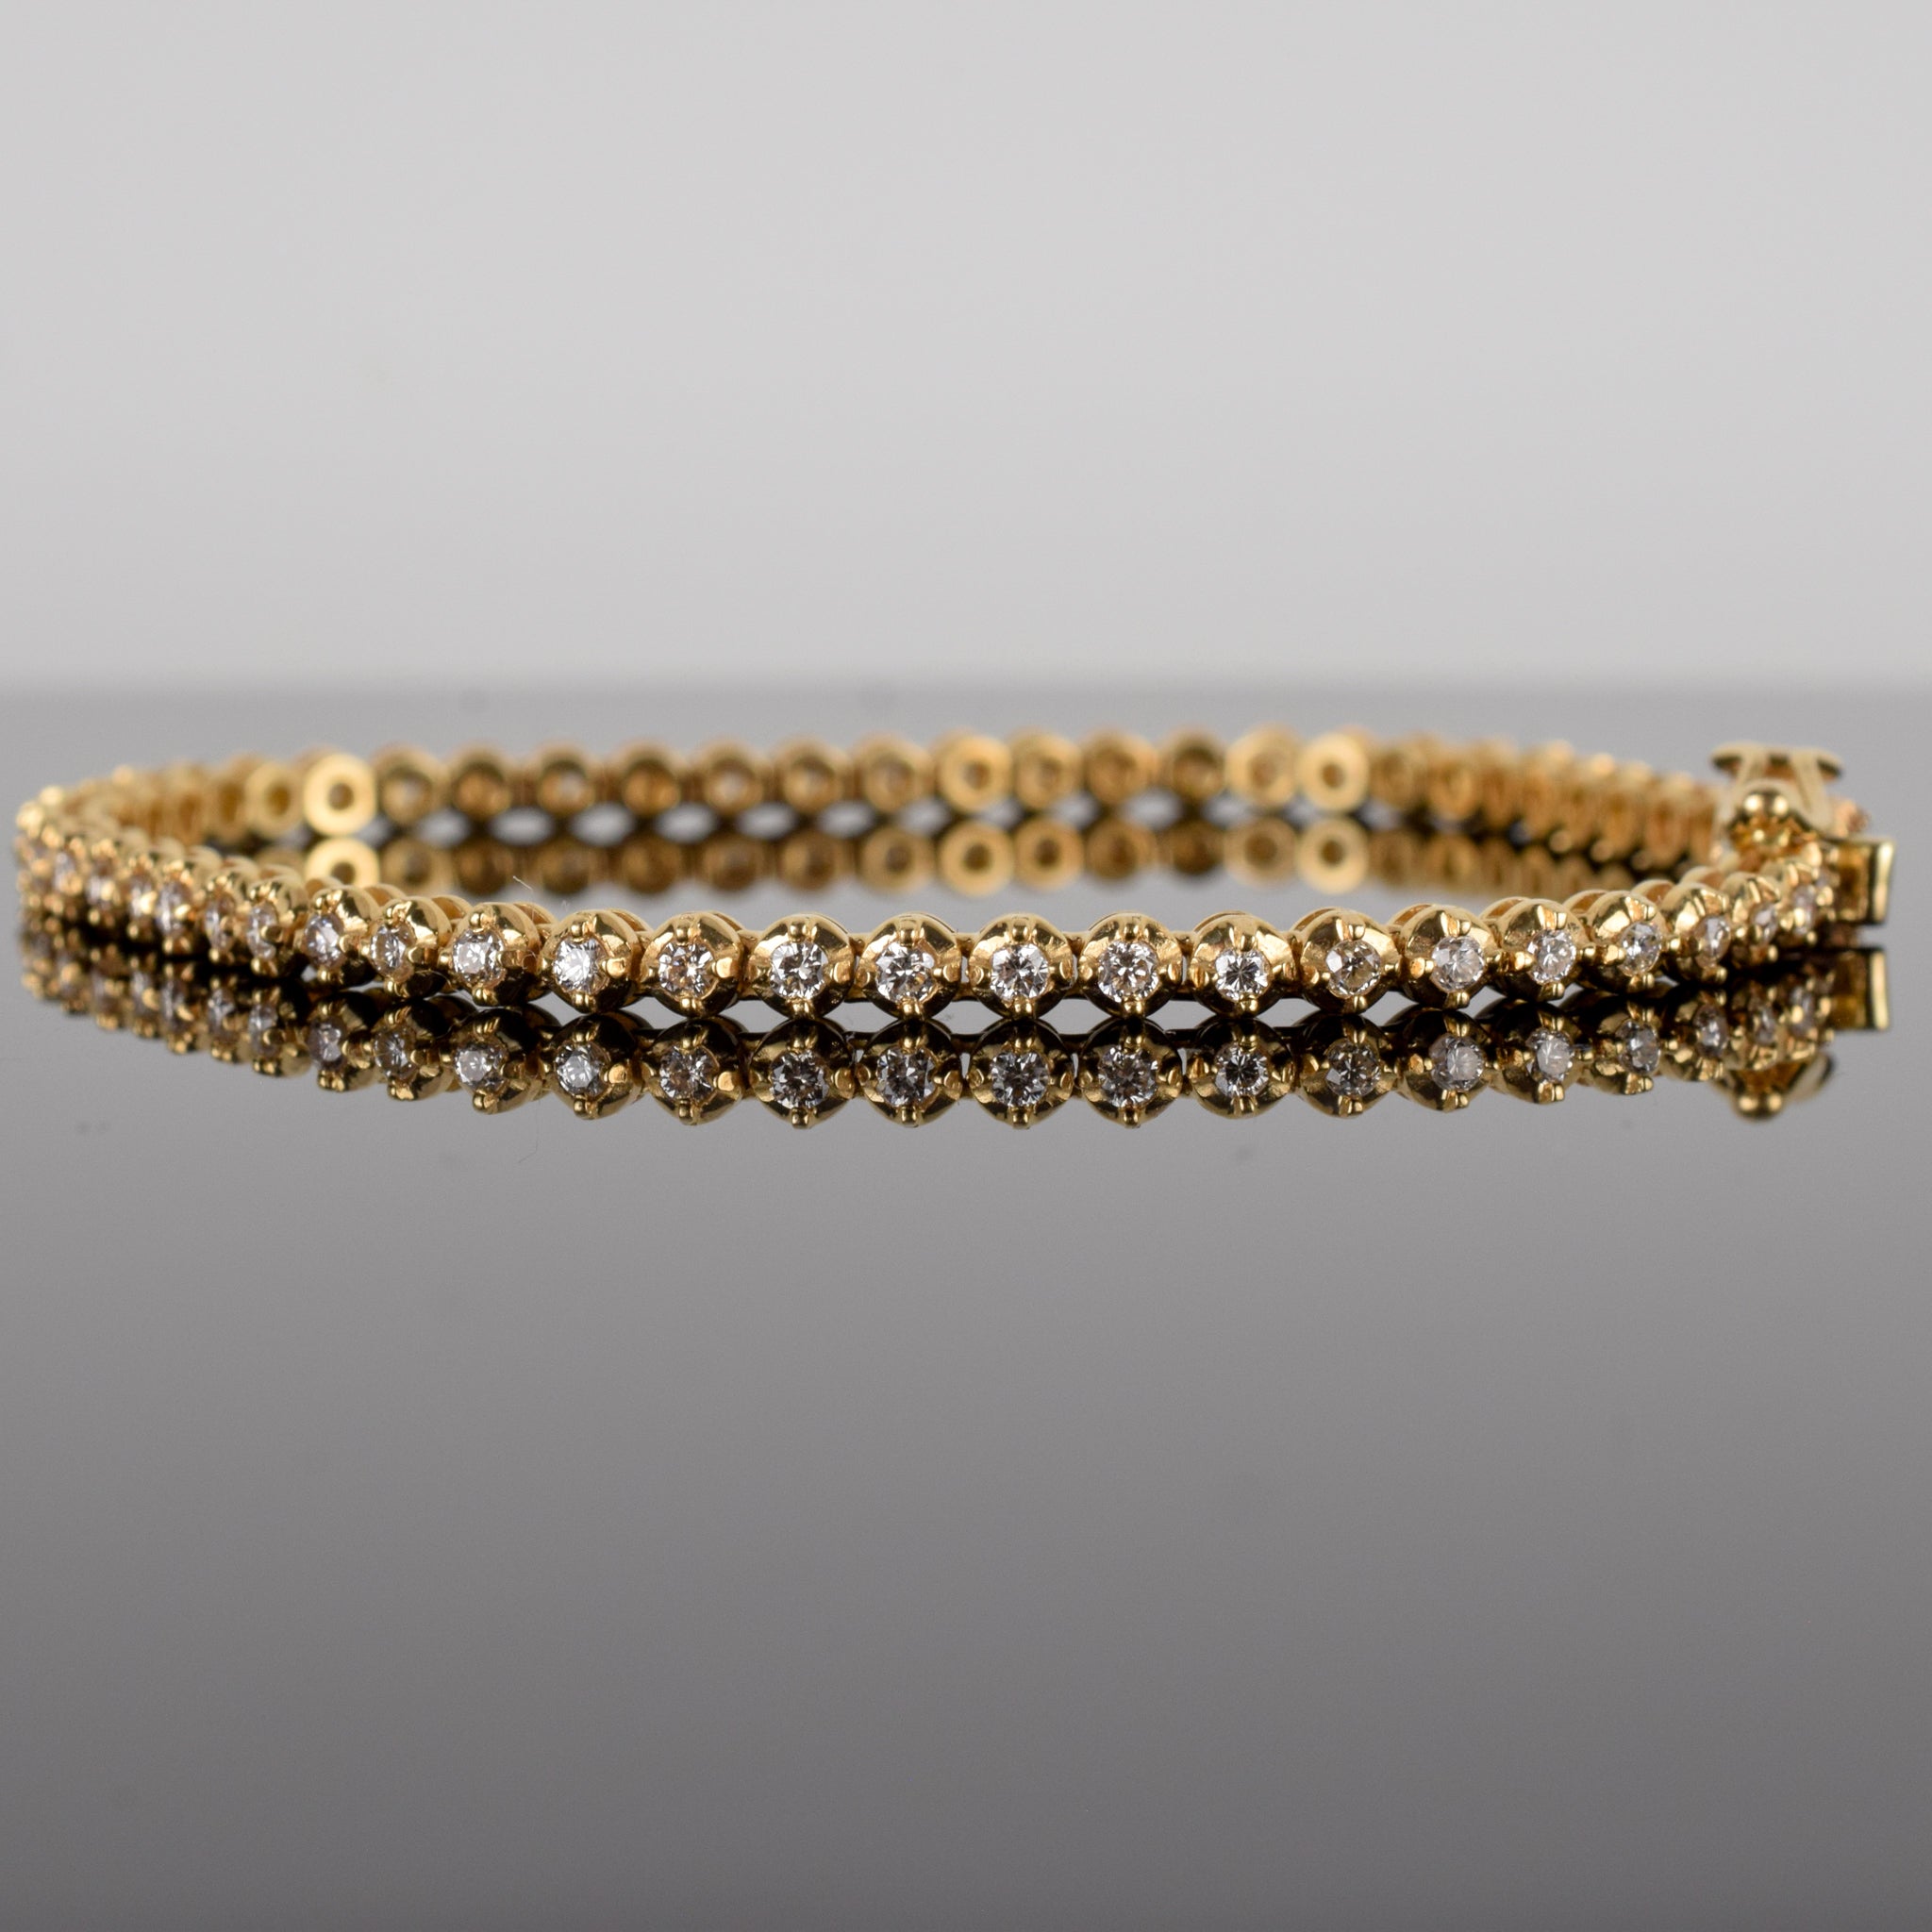 vintage gold diamond tennis bracelet, folklor